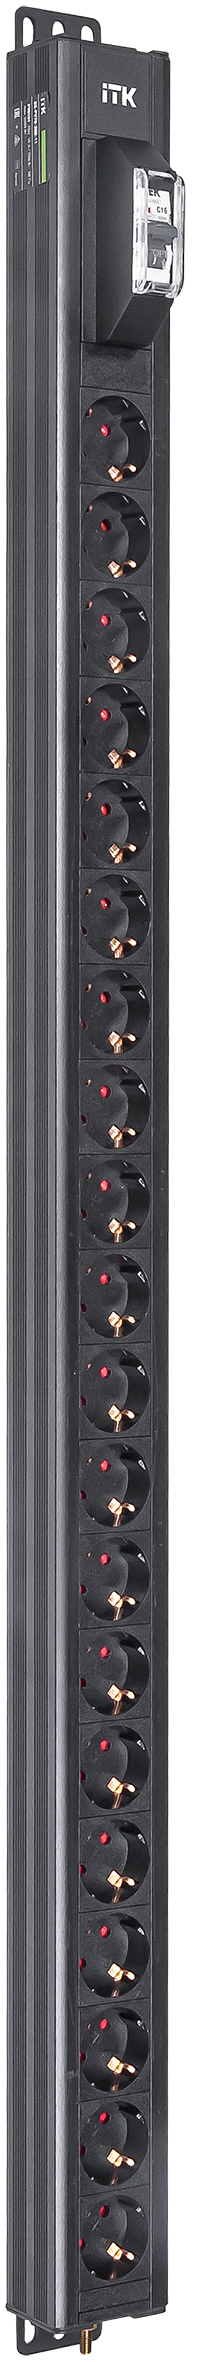 ITK BASE PDU вертикальный PV0101 25U 1 фаза 16А 20 розеток SCHUKO (немецкий стандарт) без кабеля с входным разъемом C20